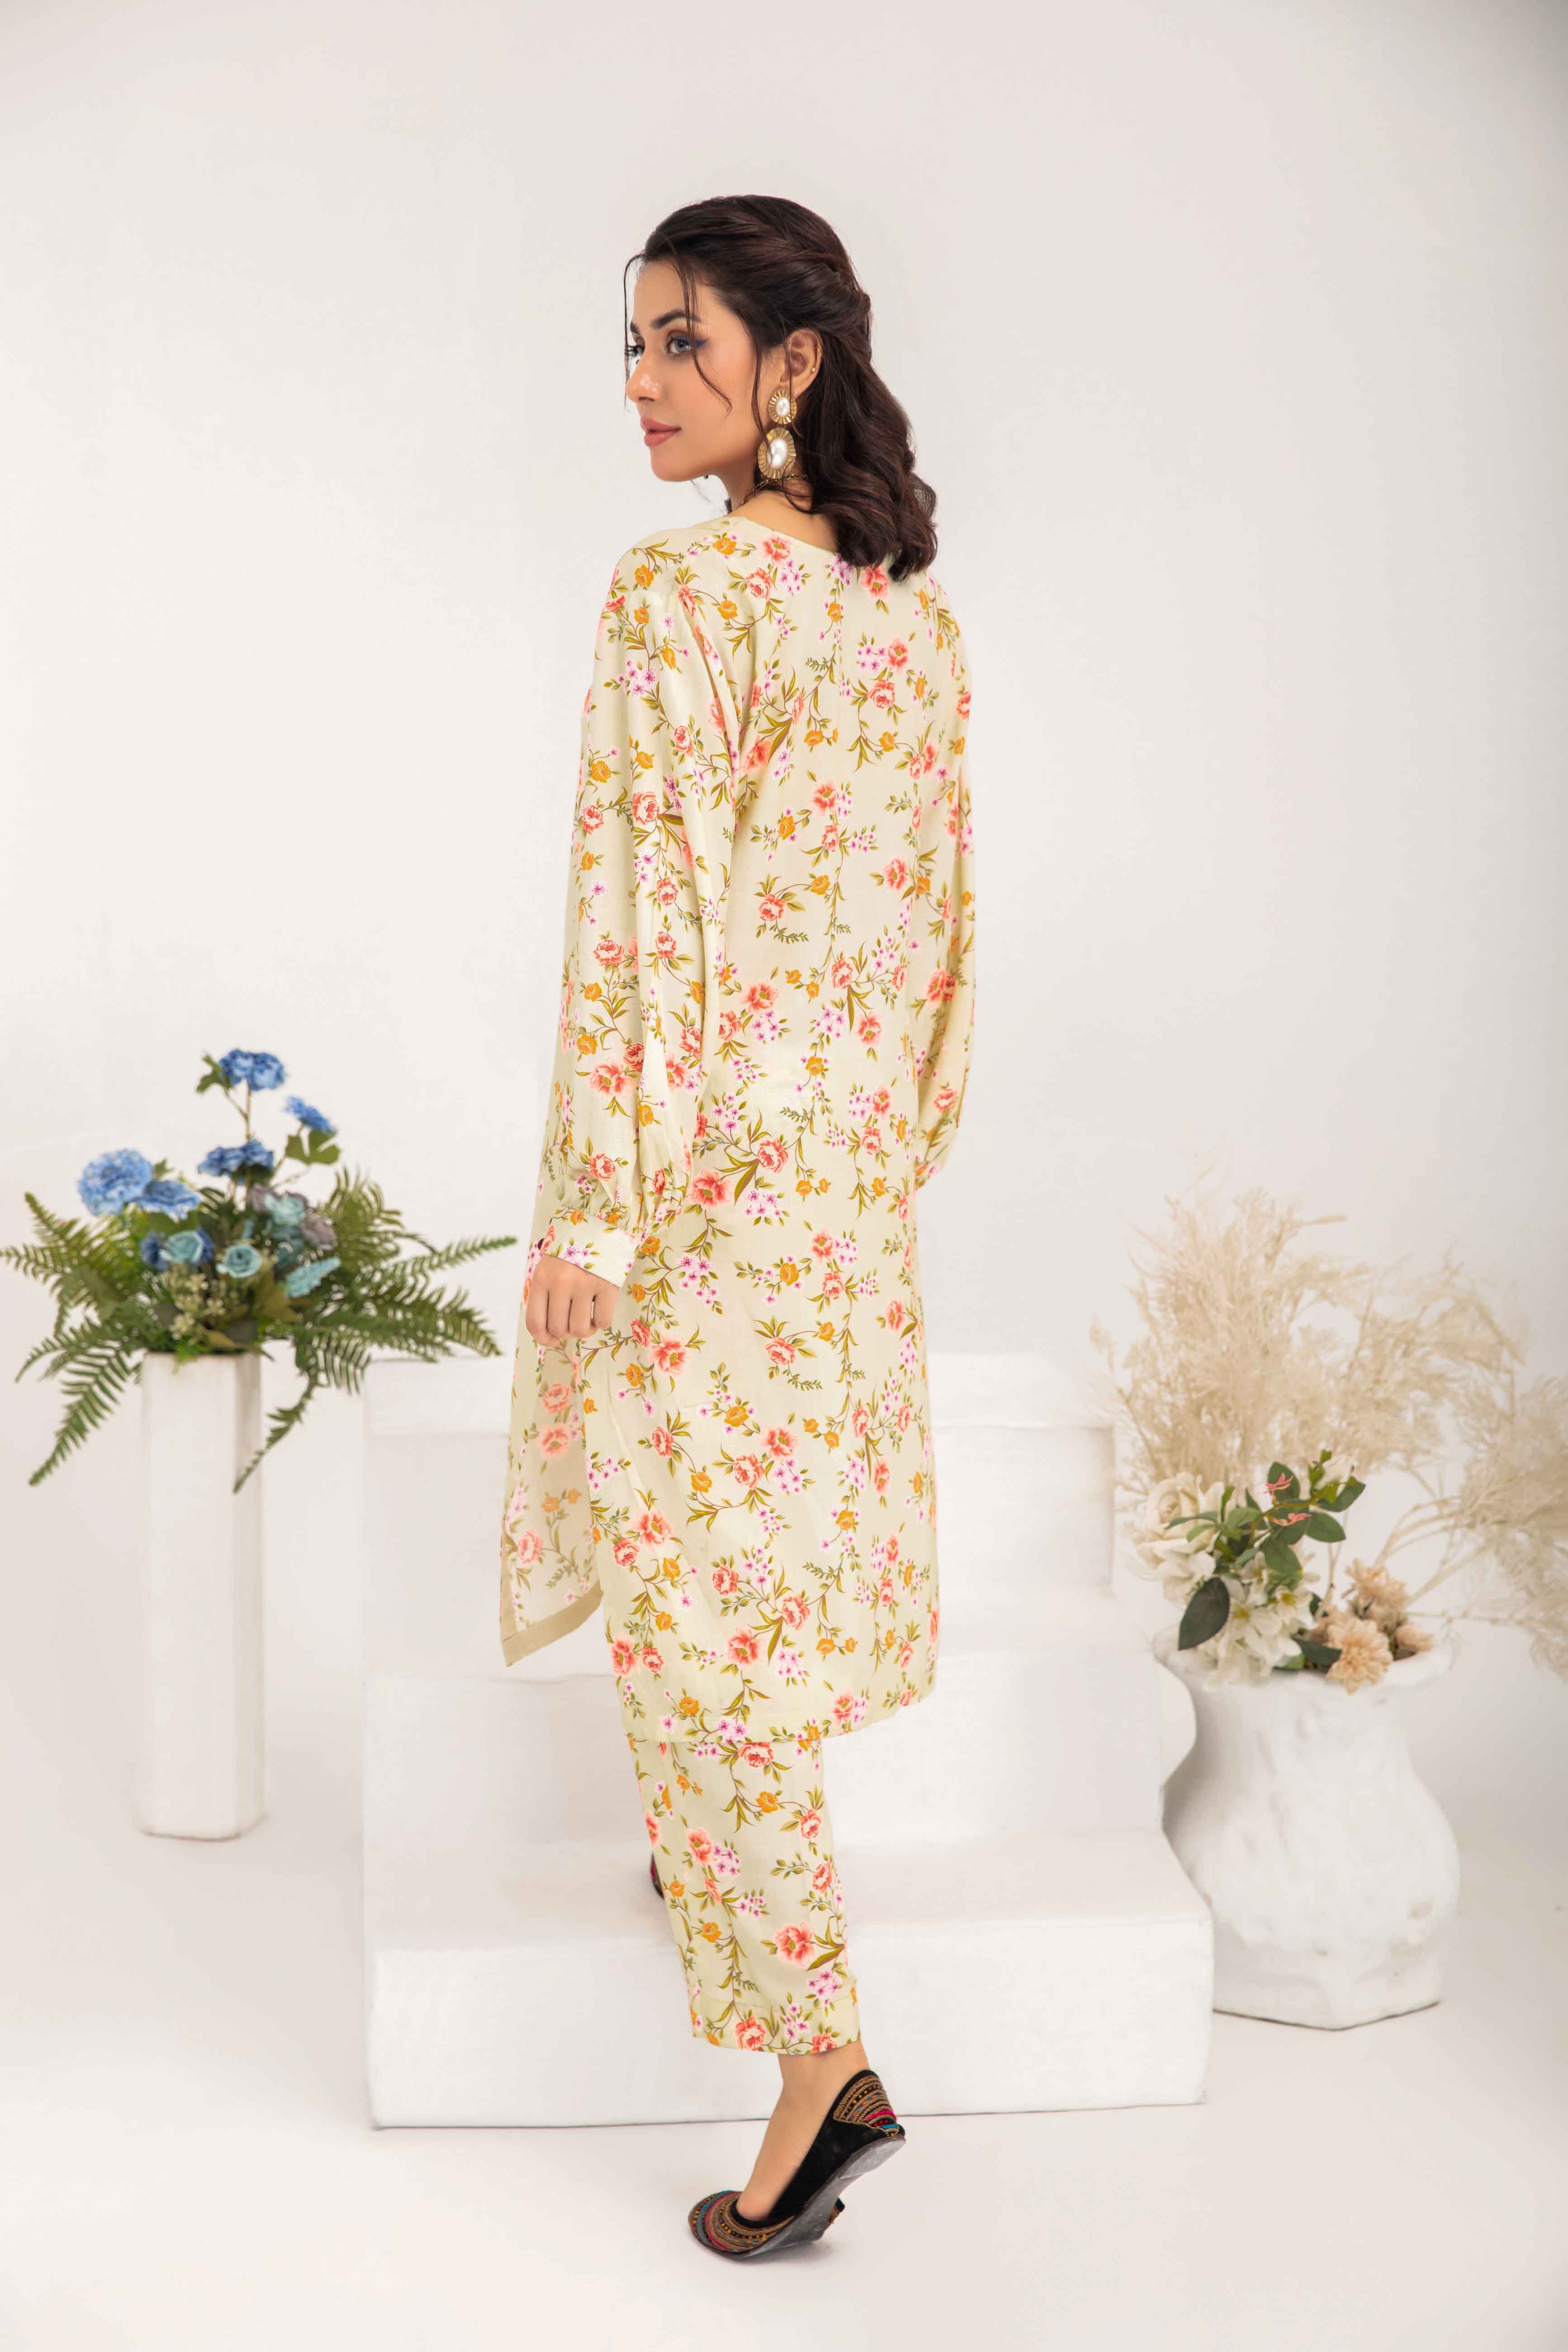 Desi Posh Floral Print on Print Linen Suit MAL05 DesiP 